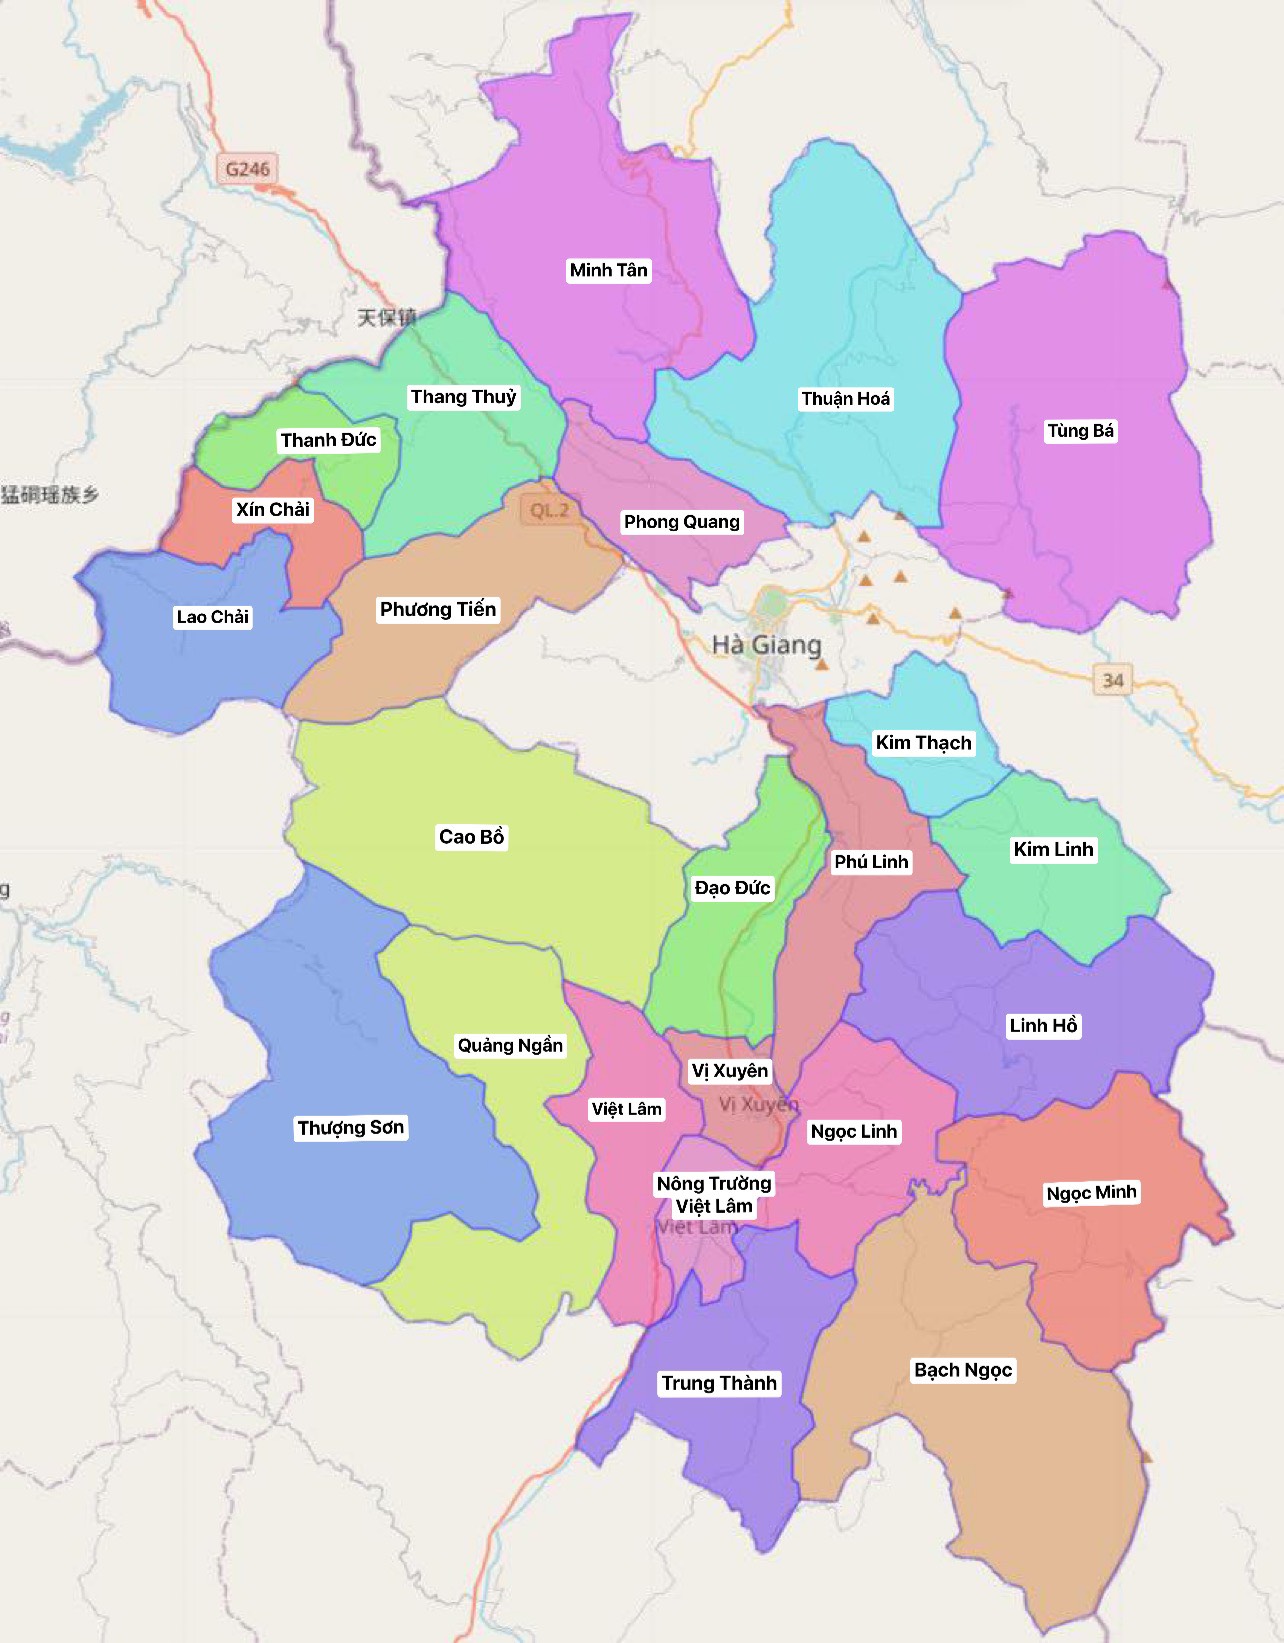 Bản đồ hành chính tỉnh Hà Giang năm 2024 - đây là cơ sở dữ liệu hoàn chỉnh và chính xác nhất về hành chính, giúp bạn dễ dàng tìm kiếm thông tin về các địa điểm và điểm đến tại tỉnh Hà Giang trong năm